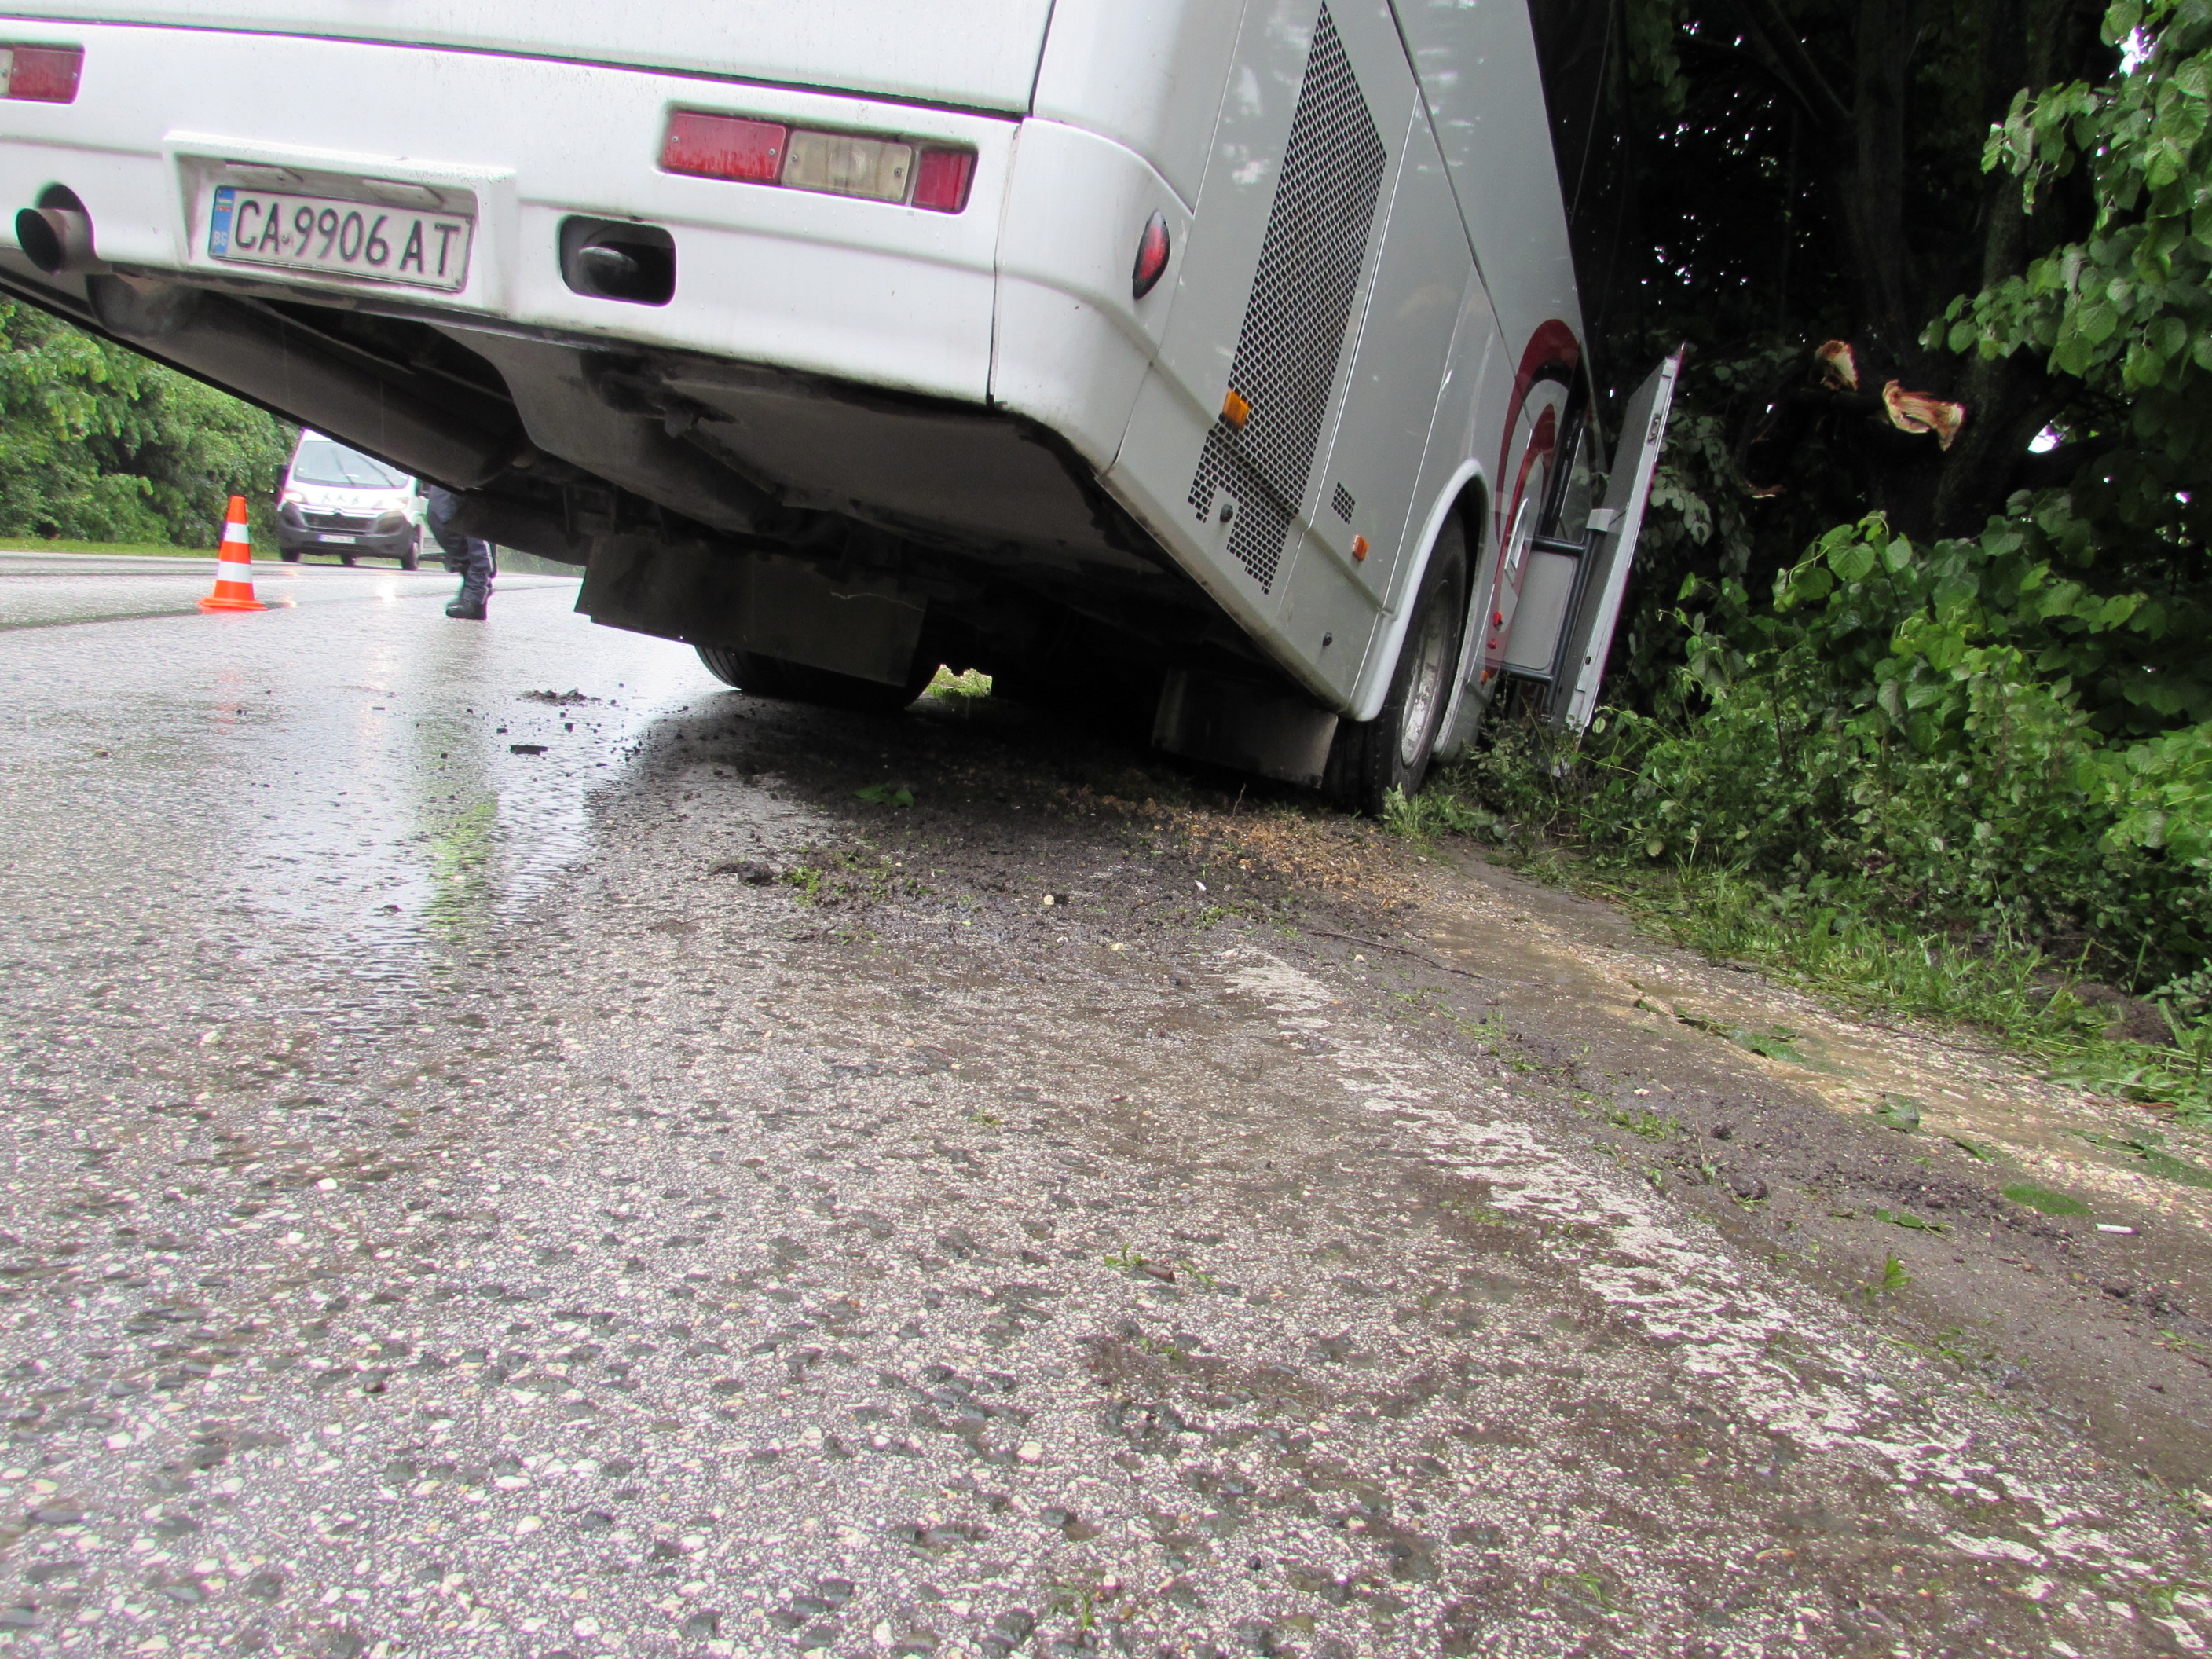 Автобусът е пътувал по направление София-Букурещ. Малко преди разклона за село Обретеник, по думите на шофьора, той е бил засечен от насрещно движещ се тир. За да избегне сблъсъка, водачът се е отклонил вдясно. Заради мокрия път автобусът е поднесъл и се е ударил в крайпътно дърво.